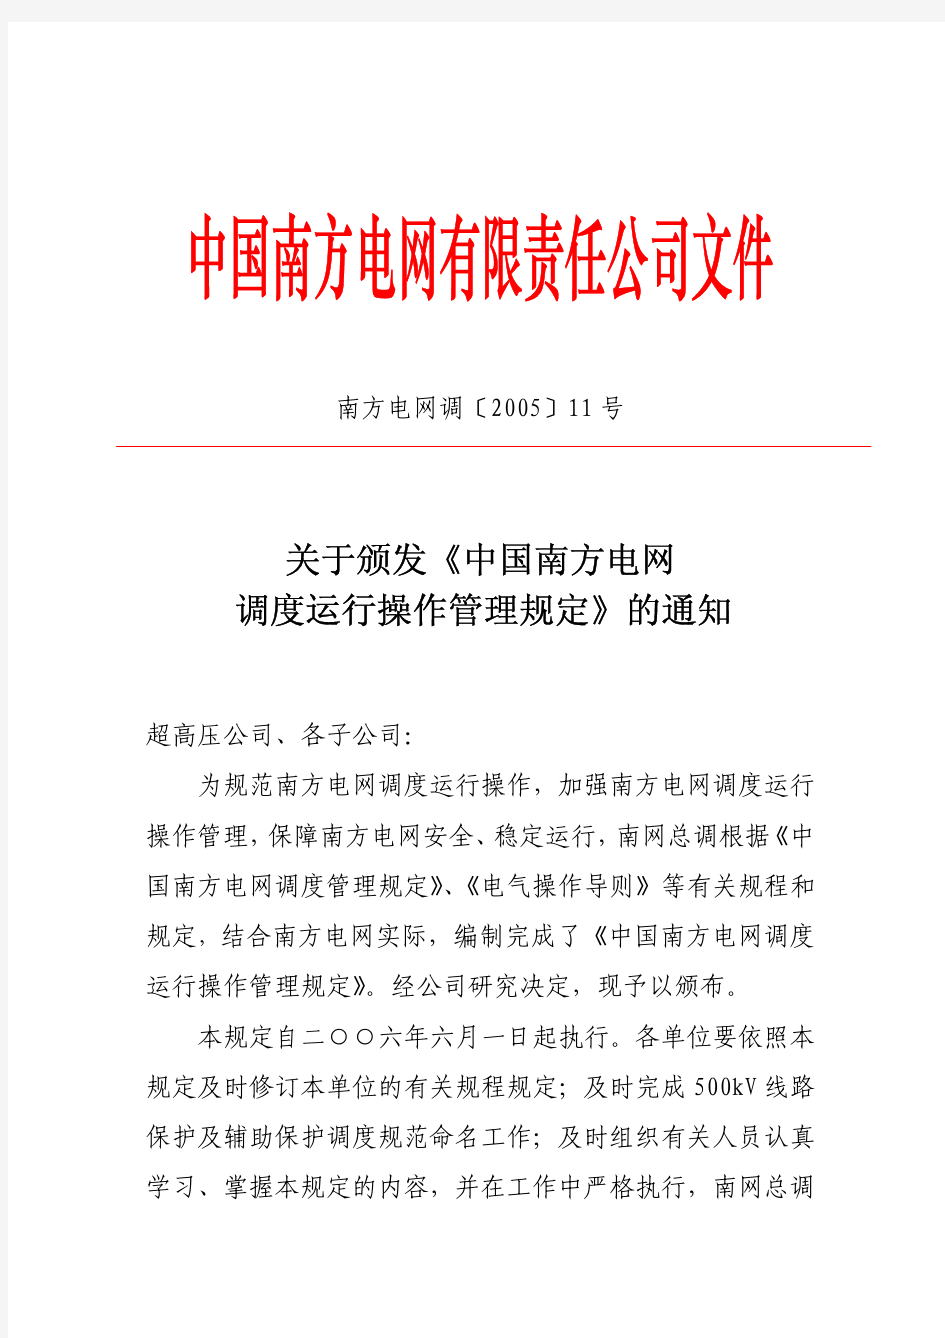 2-4《中国南方电网调度运行操作管理规定》(CSGMS 0813-2005)